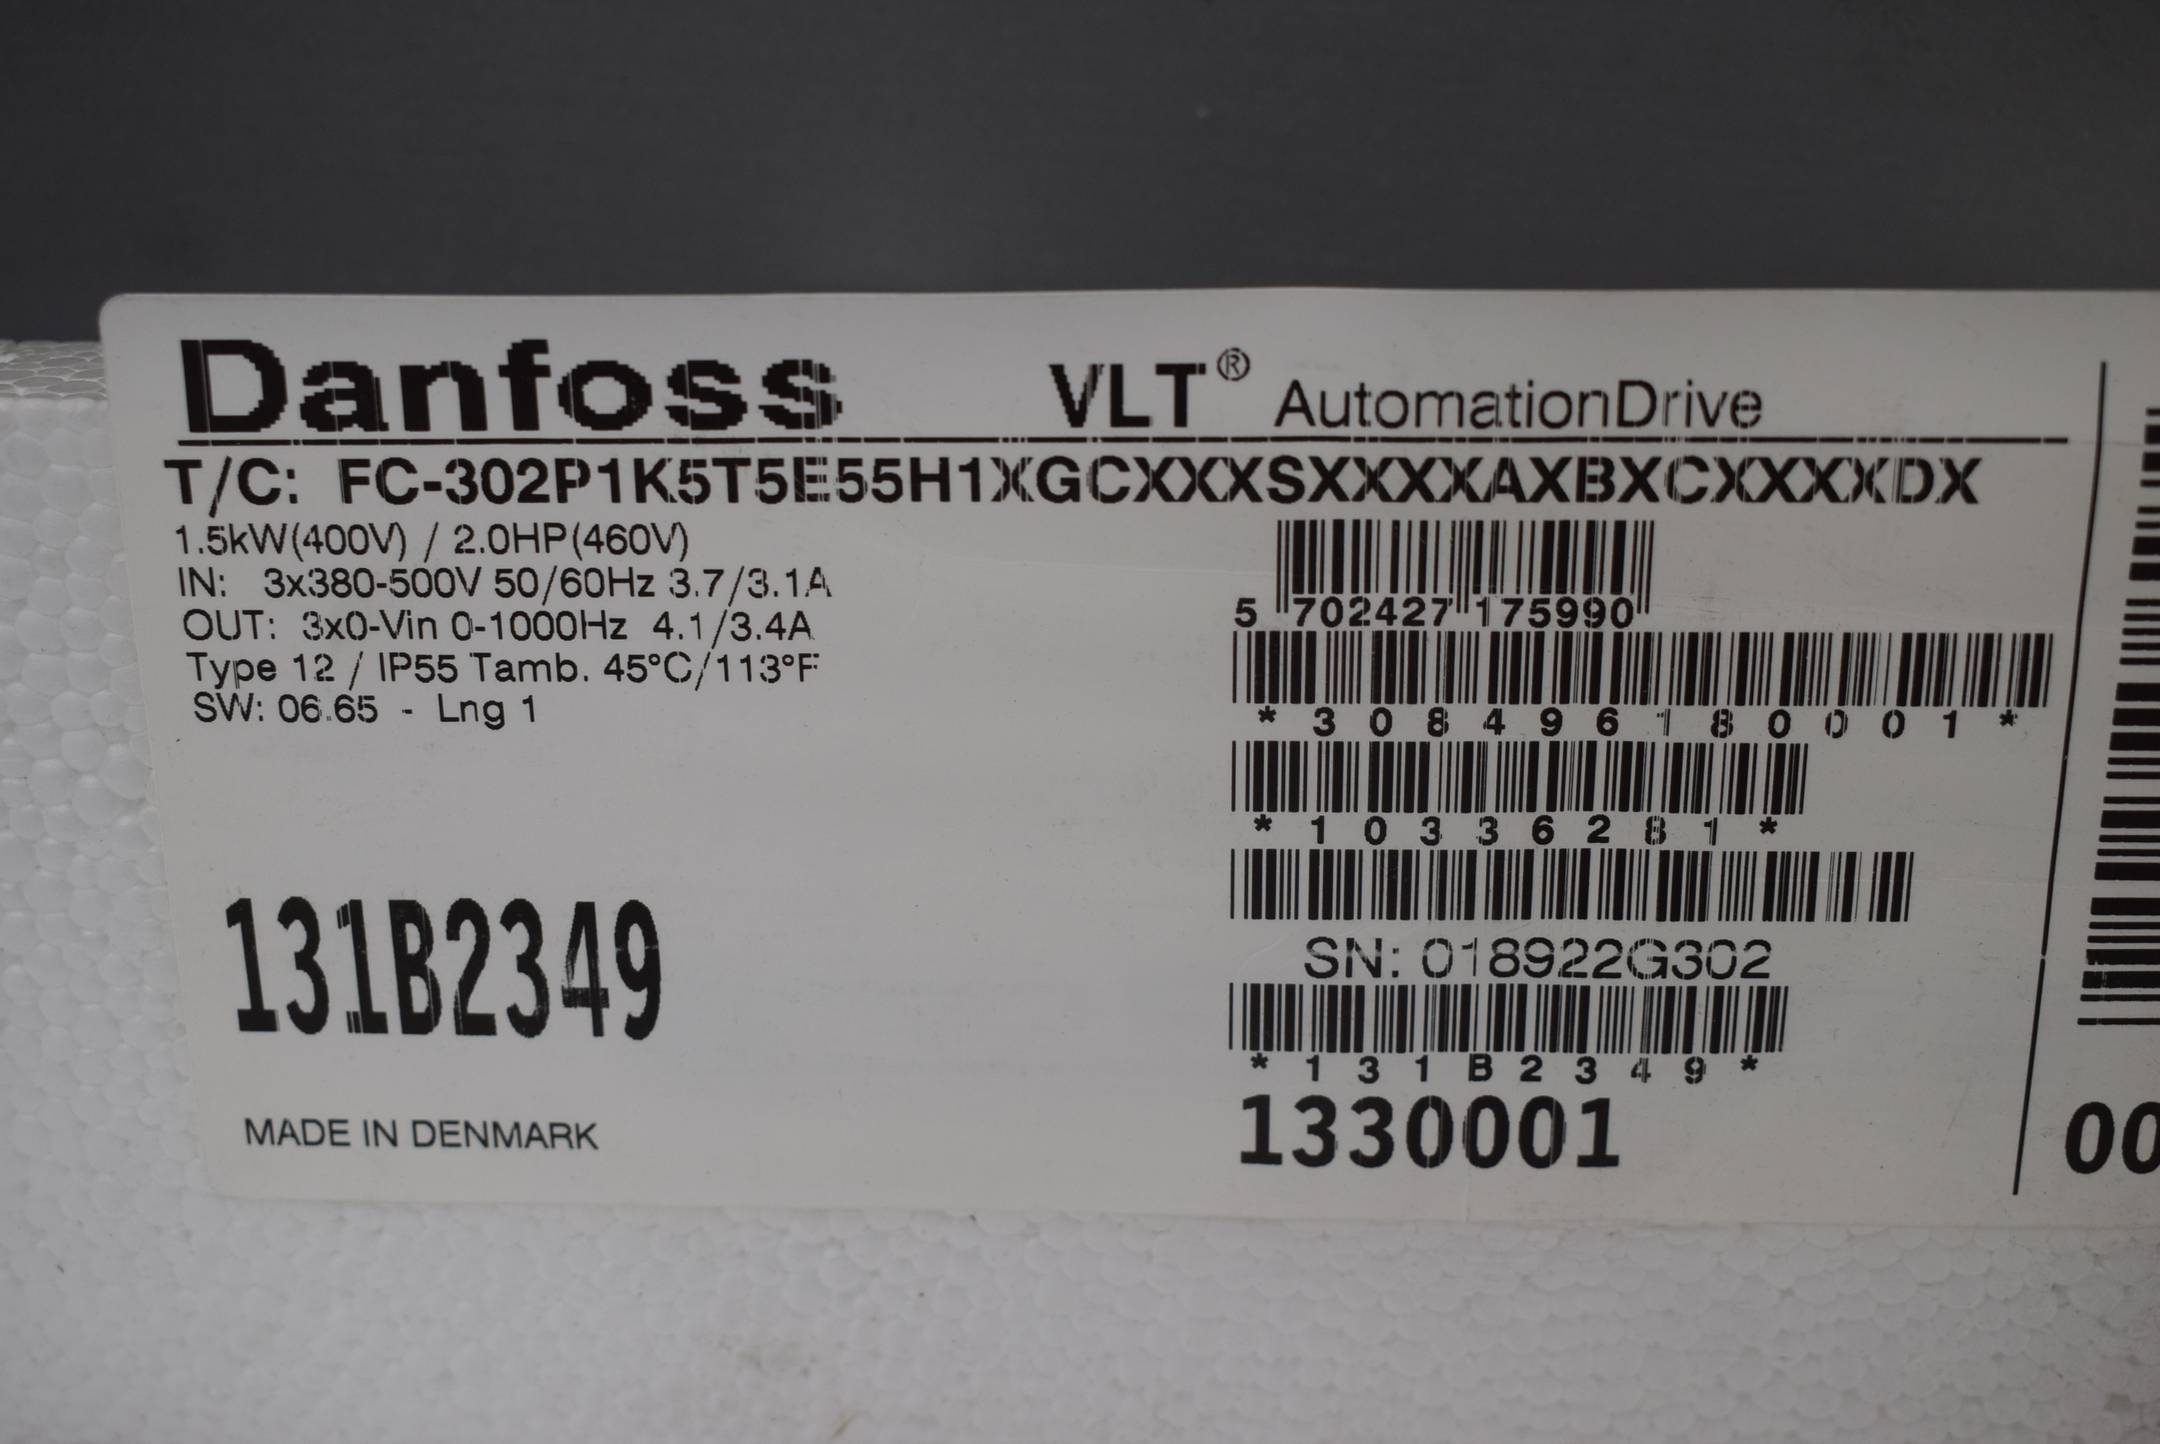 Danfoss VLT Frequenzumrichter FC-302P1K5T5E55H1XGCXXXSXXXXAXBXCXXXXDX 131B2349